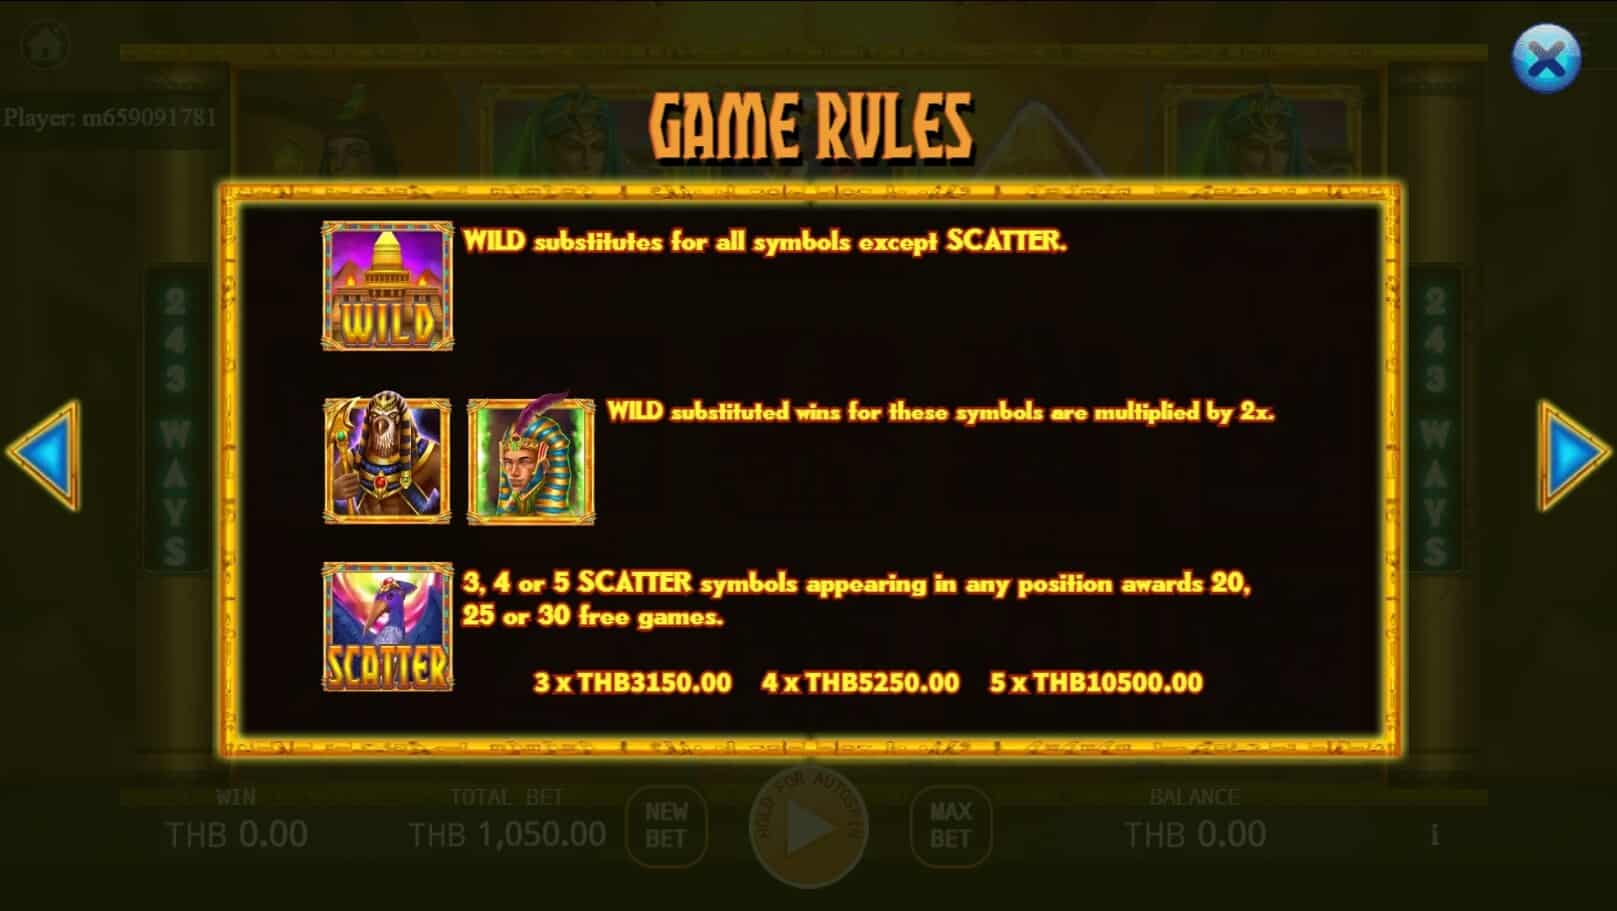 Egyptian Mythology สล็อต เว็บตรง ไม่ผ่านเอเย่นต์ ค่าย KA Gaming สมัคร joker